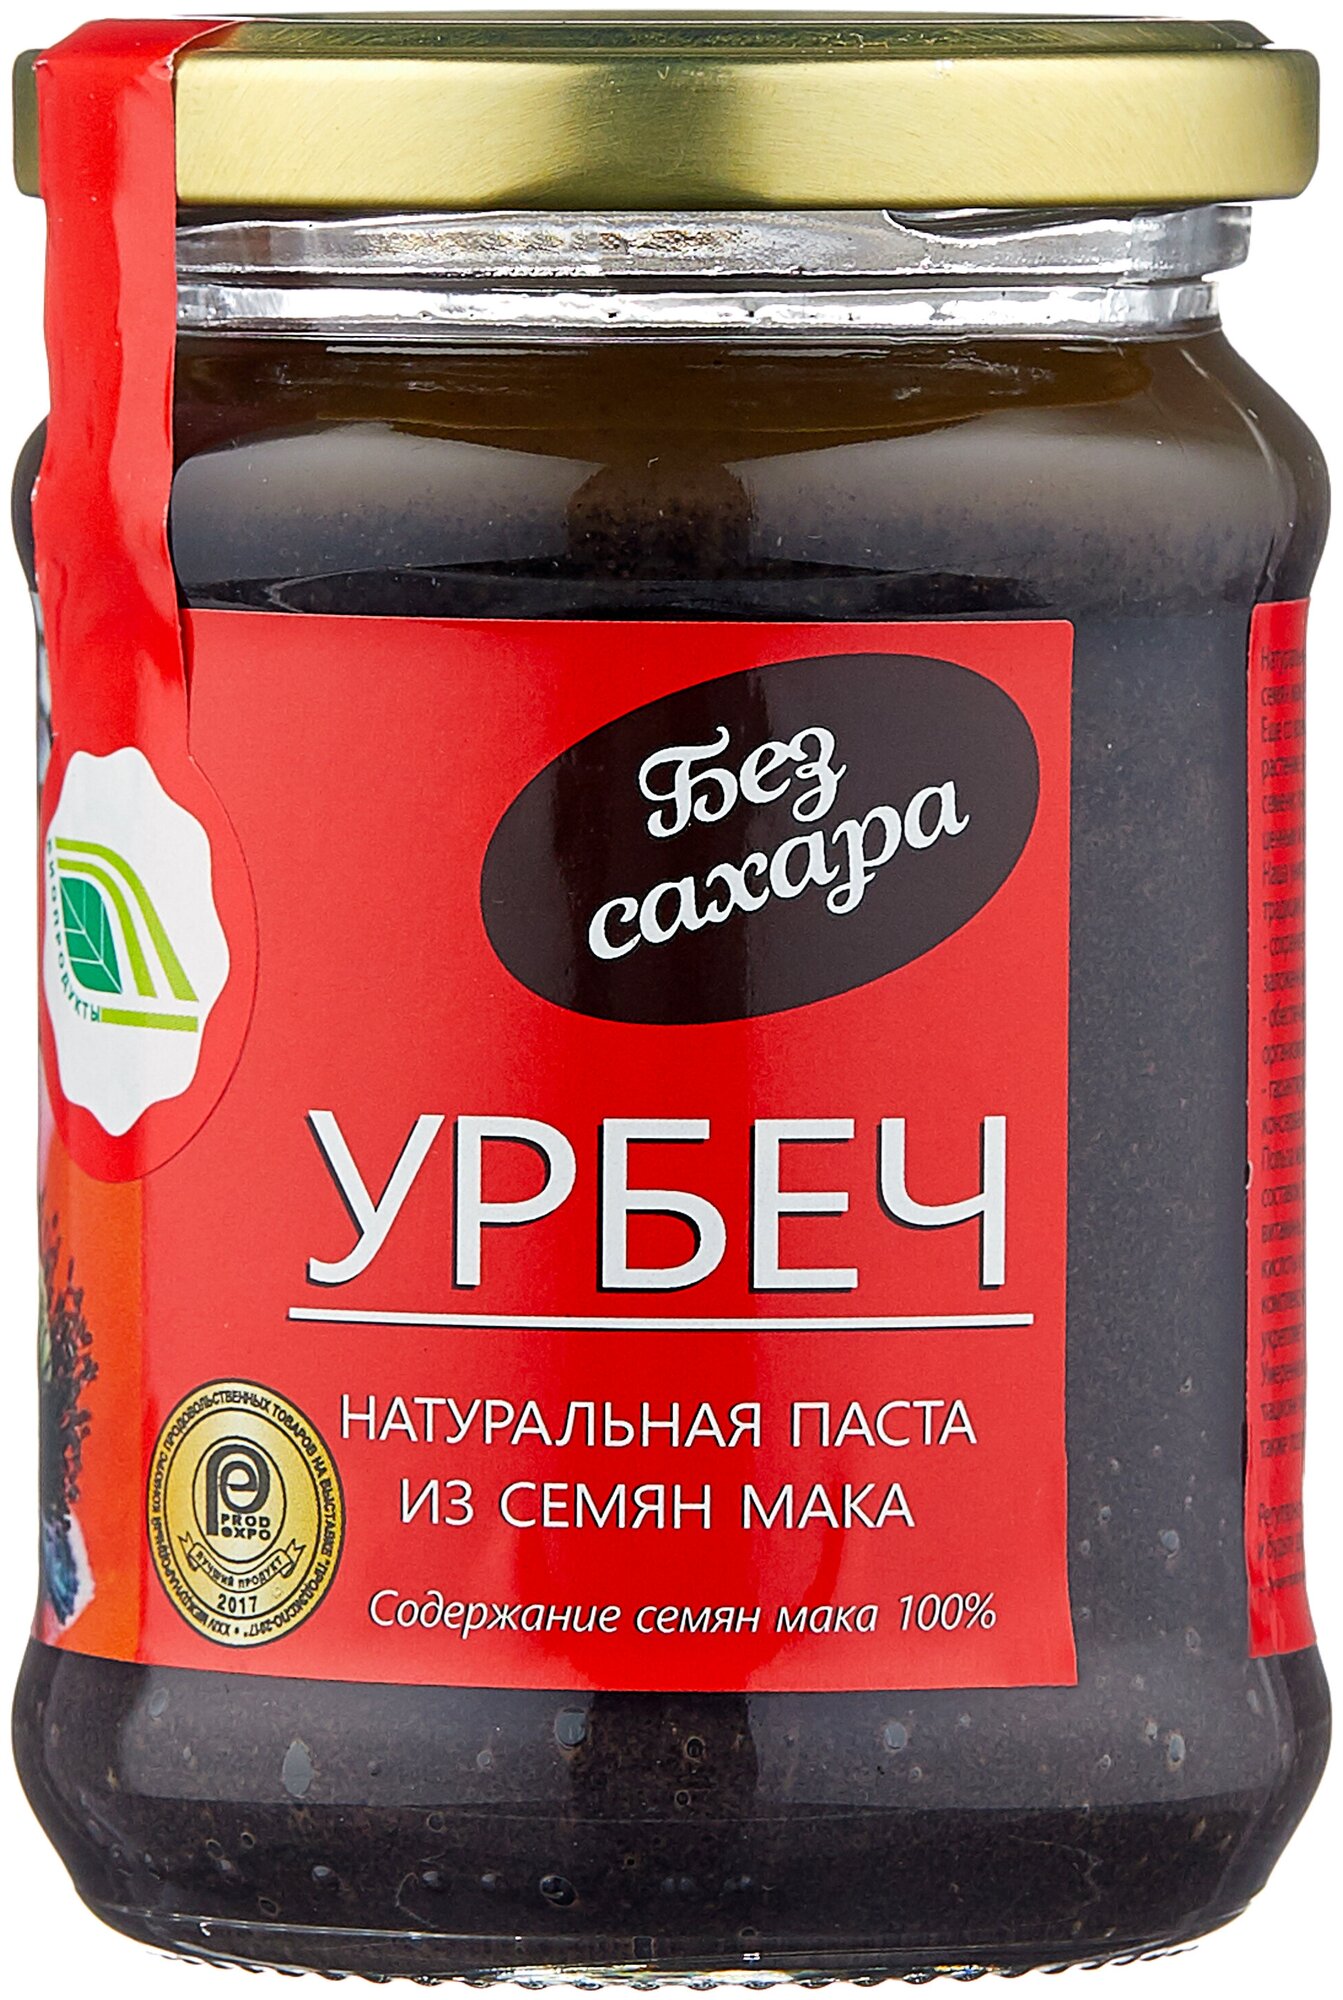 Биопродукты Урбеч из семян мака 280 г